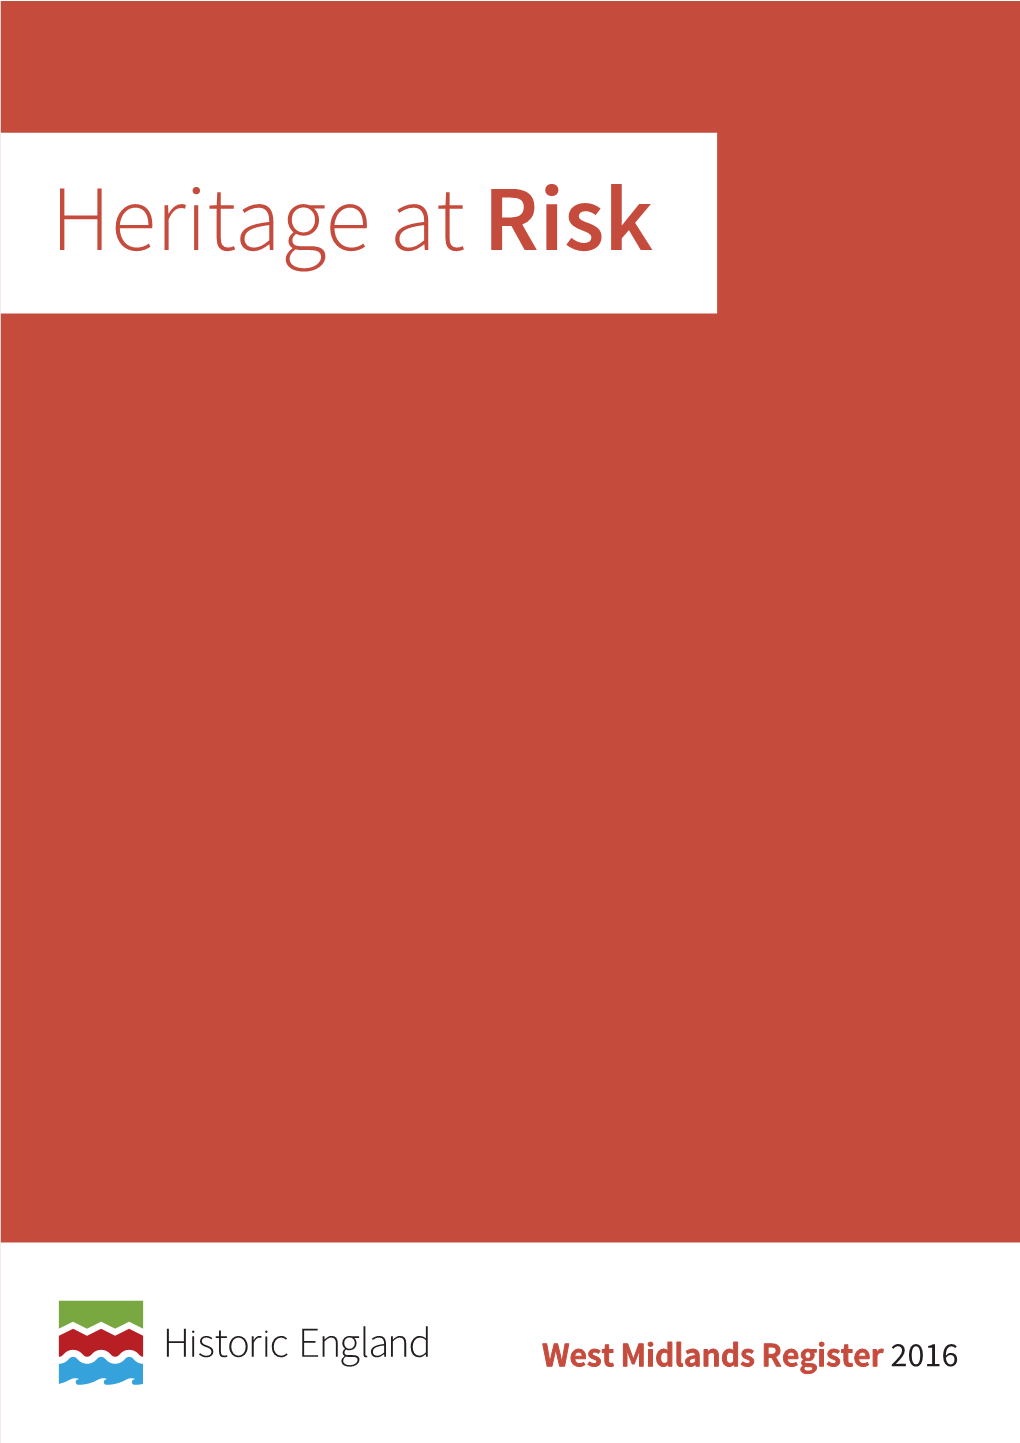 Heritage at Risk Register 2016, West Midlands